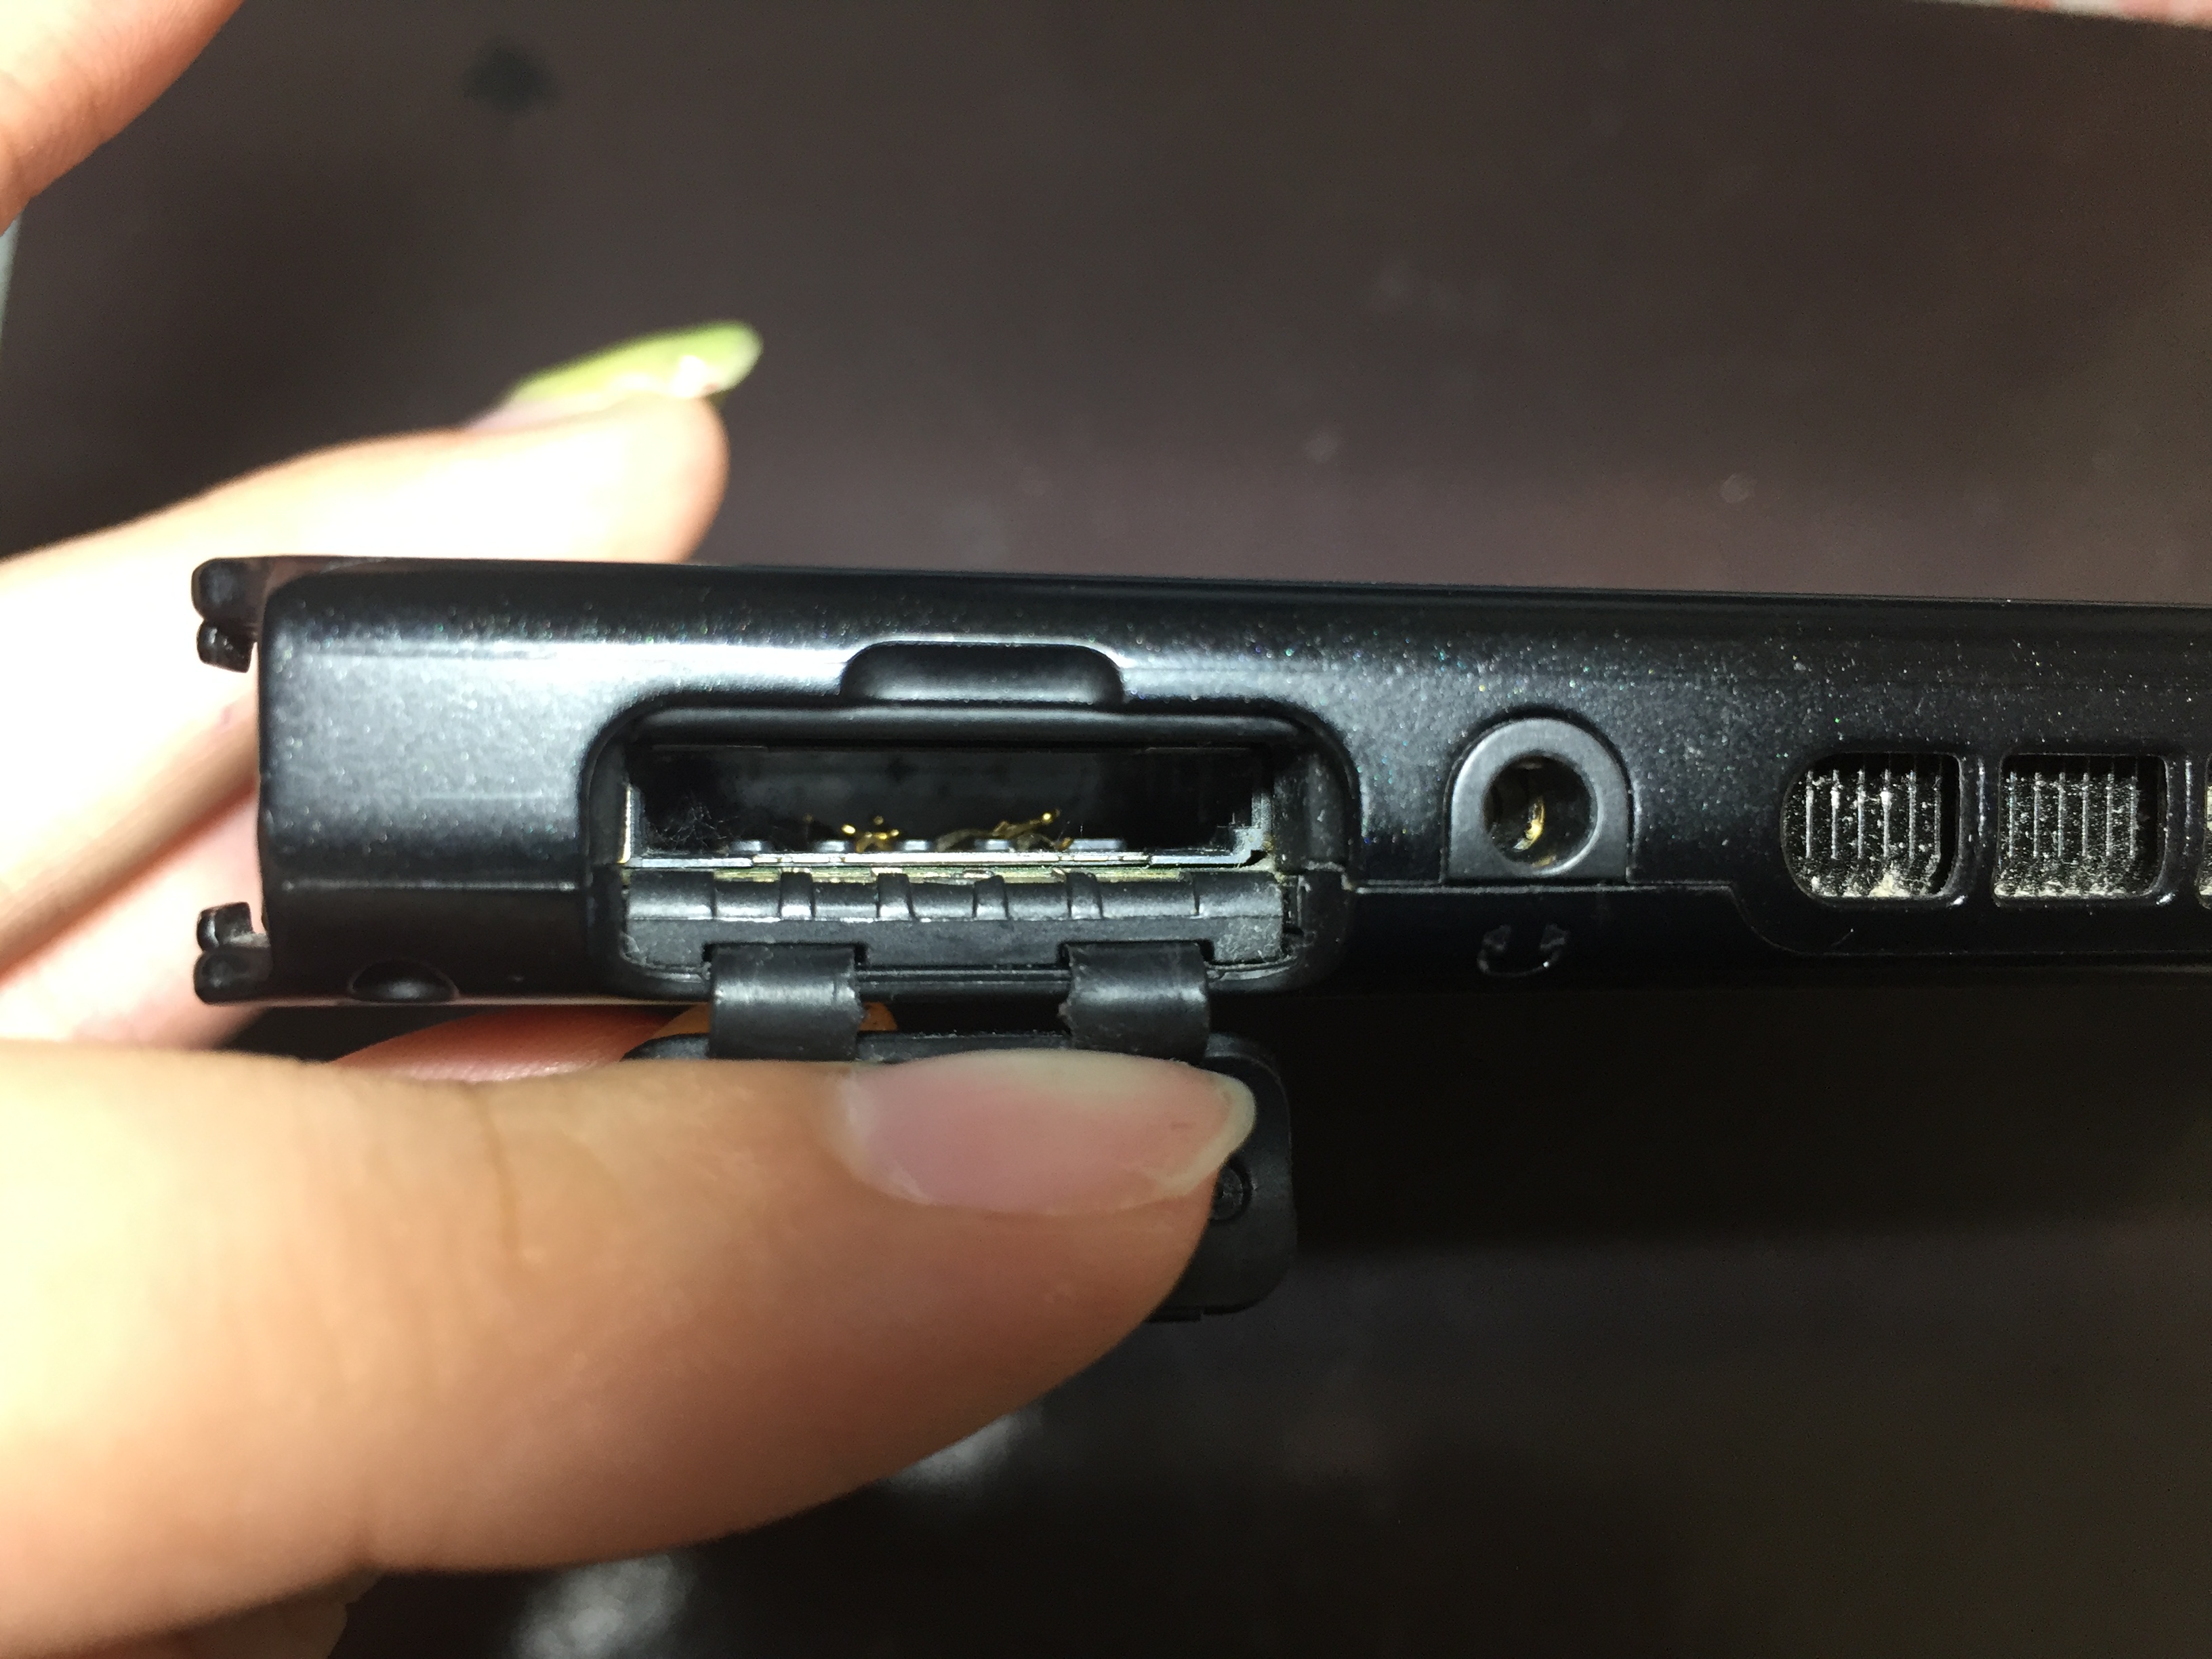 Switchでカセットを入れていないのに 読み込めません のエラー Switch Nintendo3ds Psp 修理のゲームホスピタル Switch Nintendo3ds ニンテンドーds Psp 修理